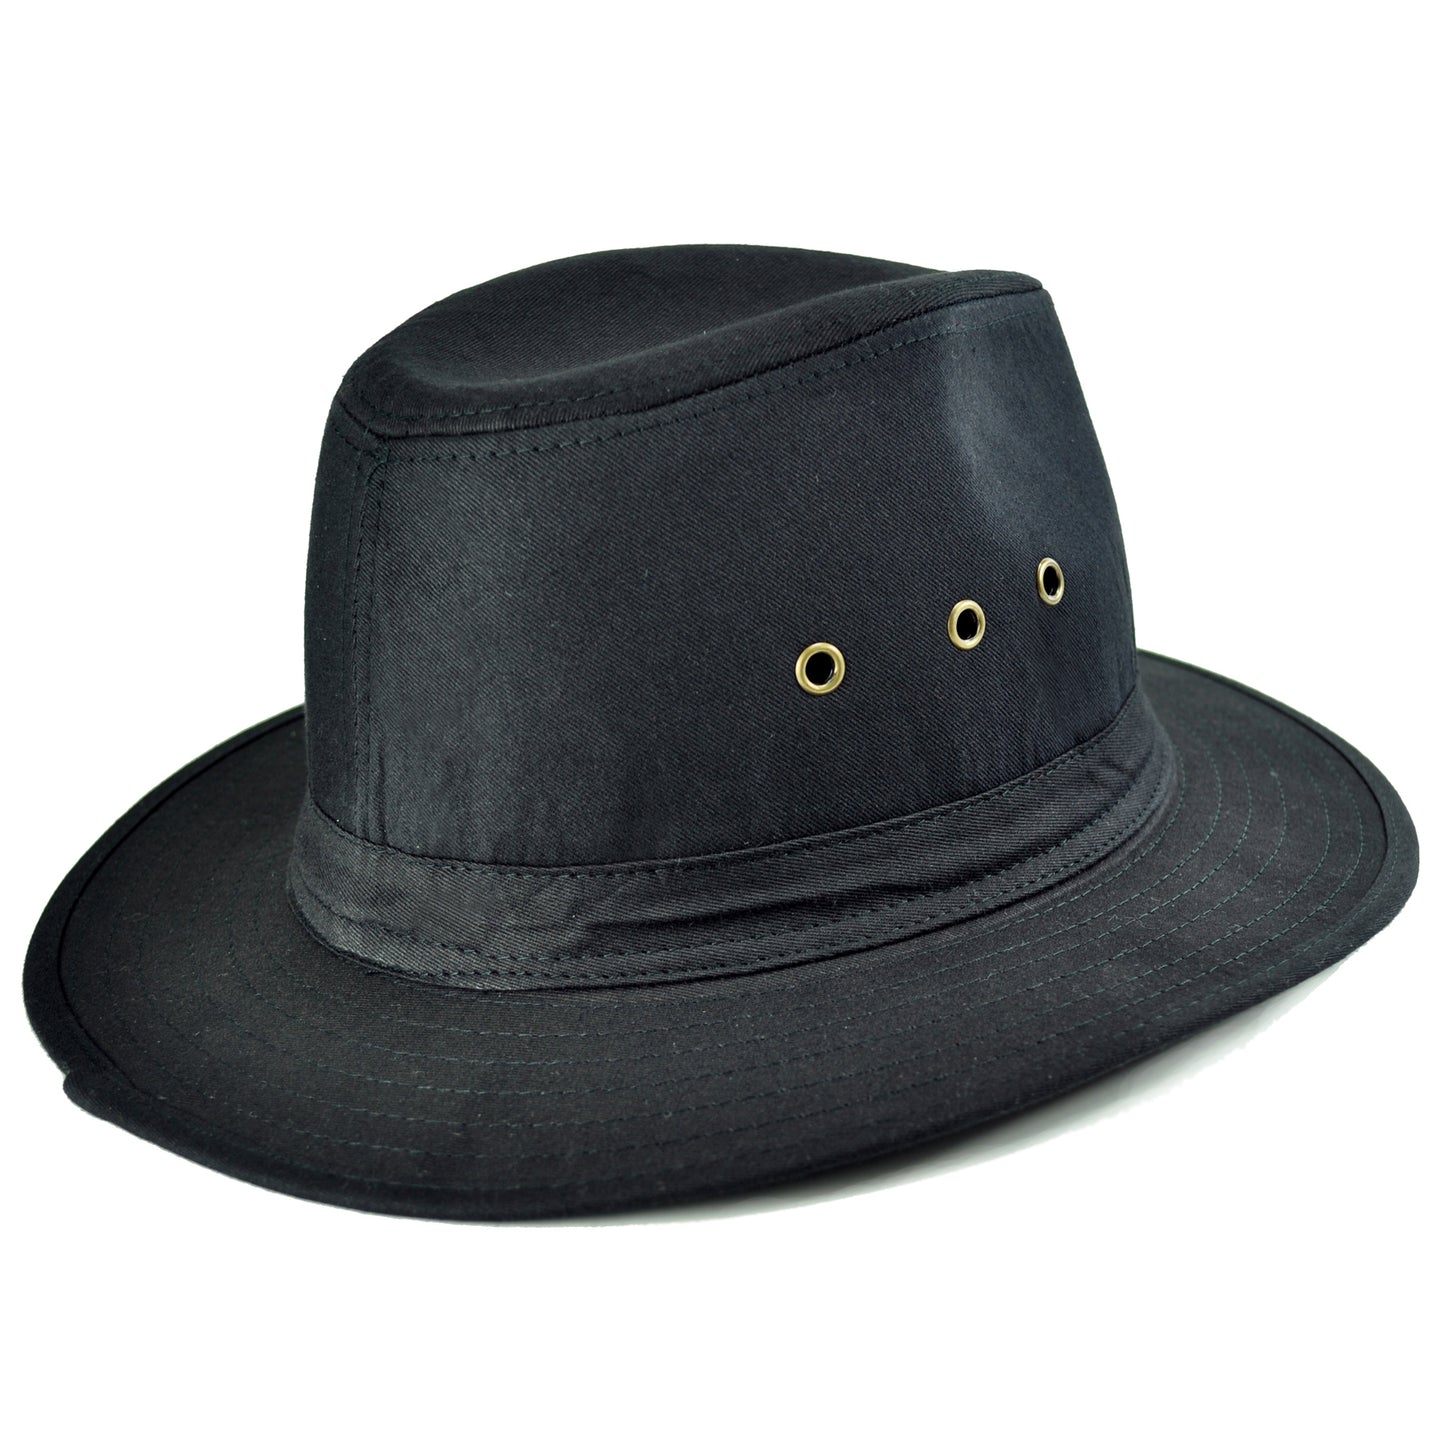 Enjoy Life® Men's Fedora Hat